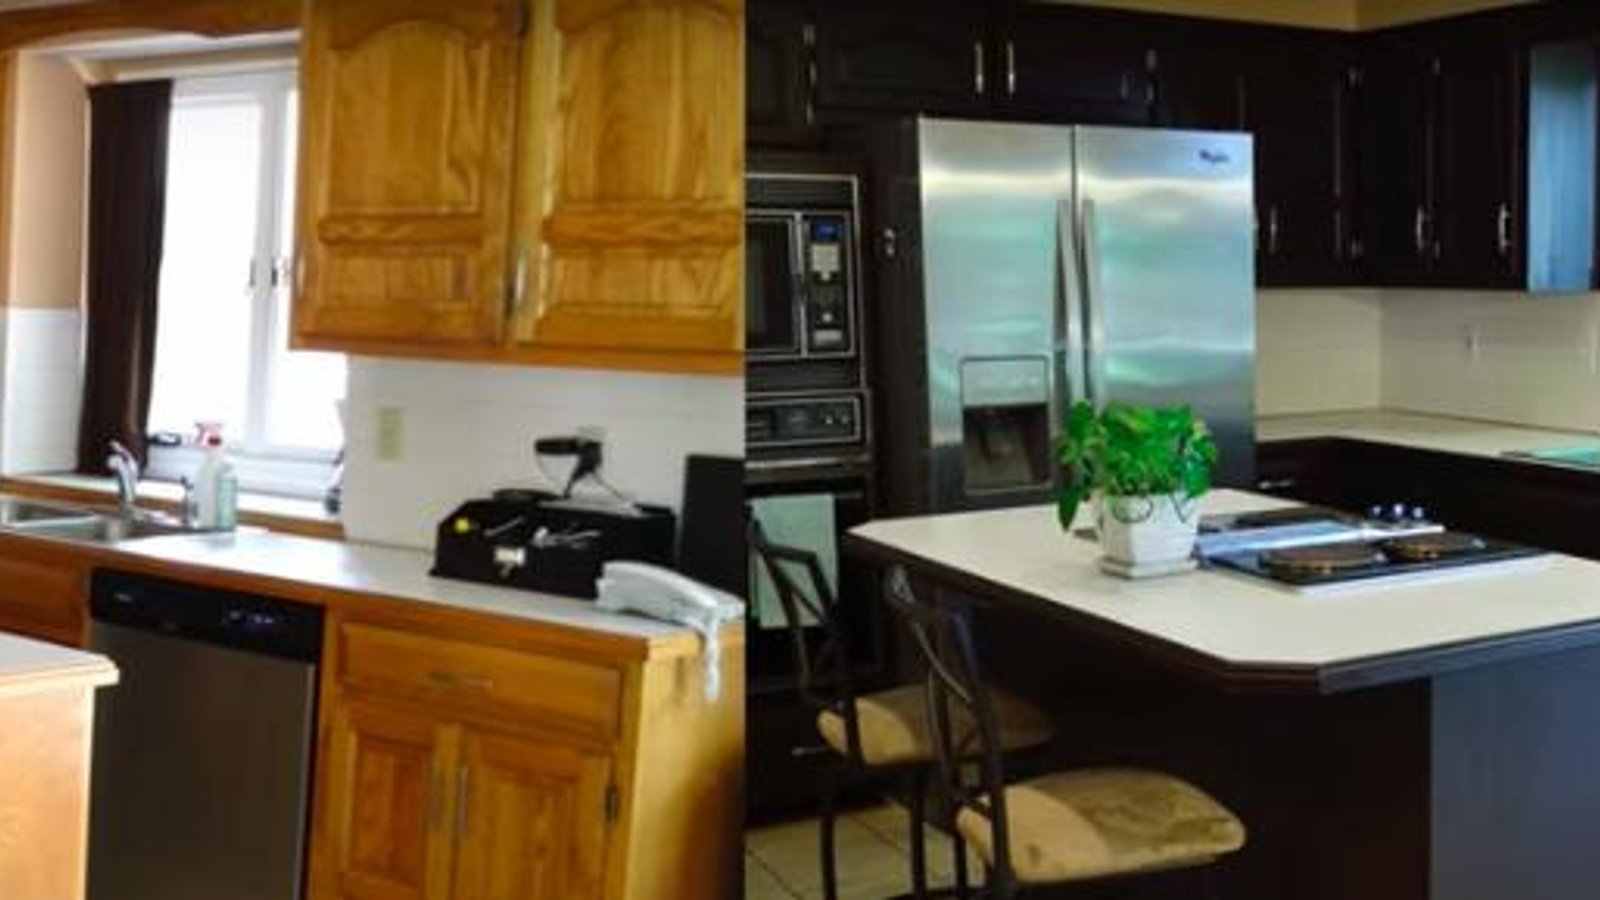 Une façon peu coûteuse et simple de rénover votre cuisine!